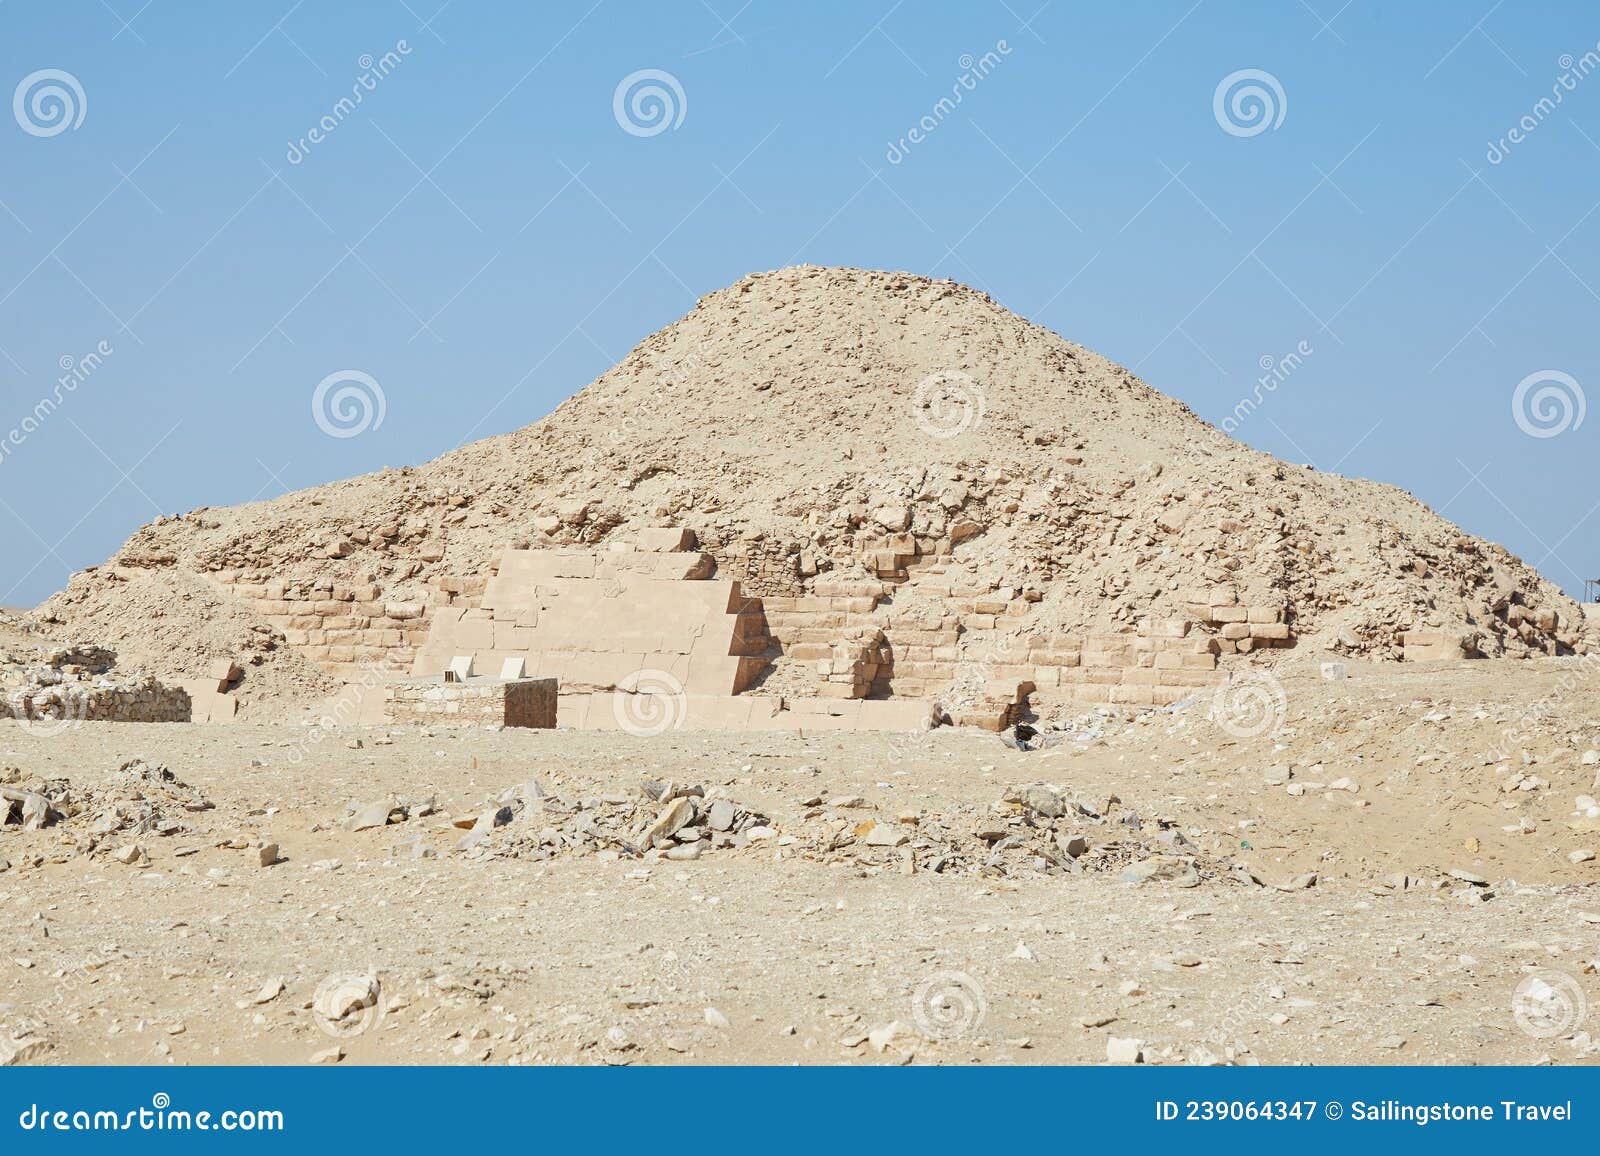 the pyramid of unas at saqqara, known for the pyramid texts